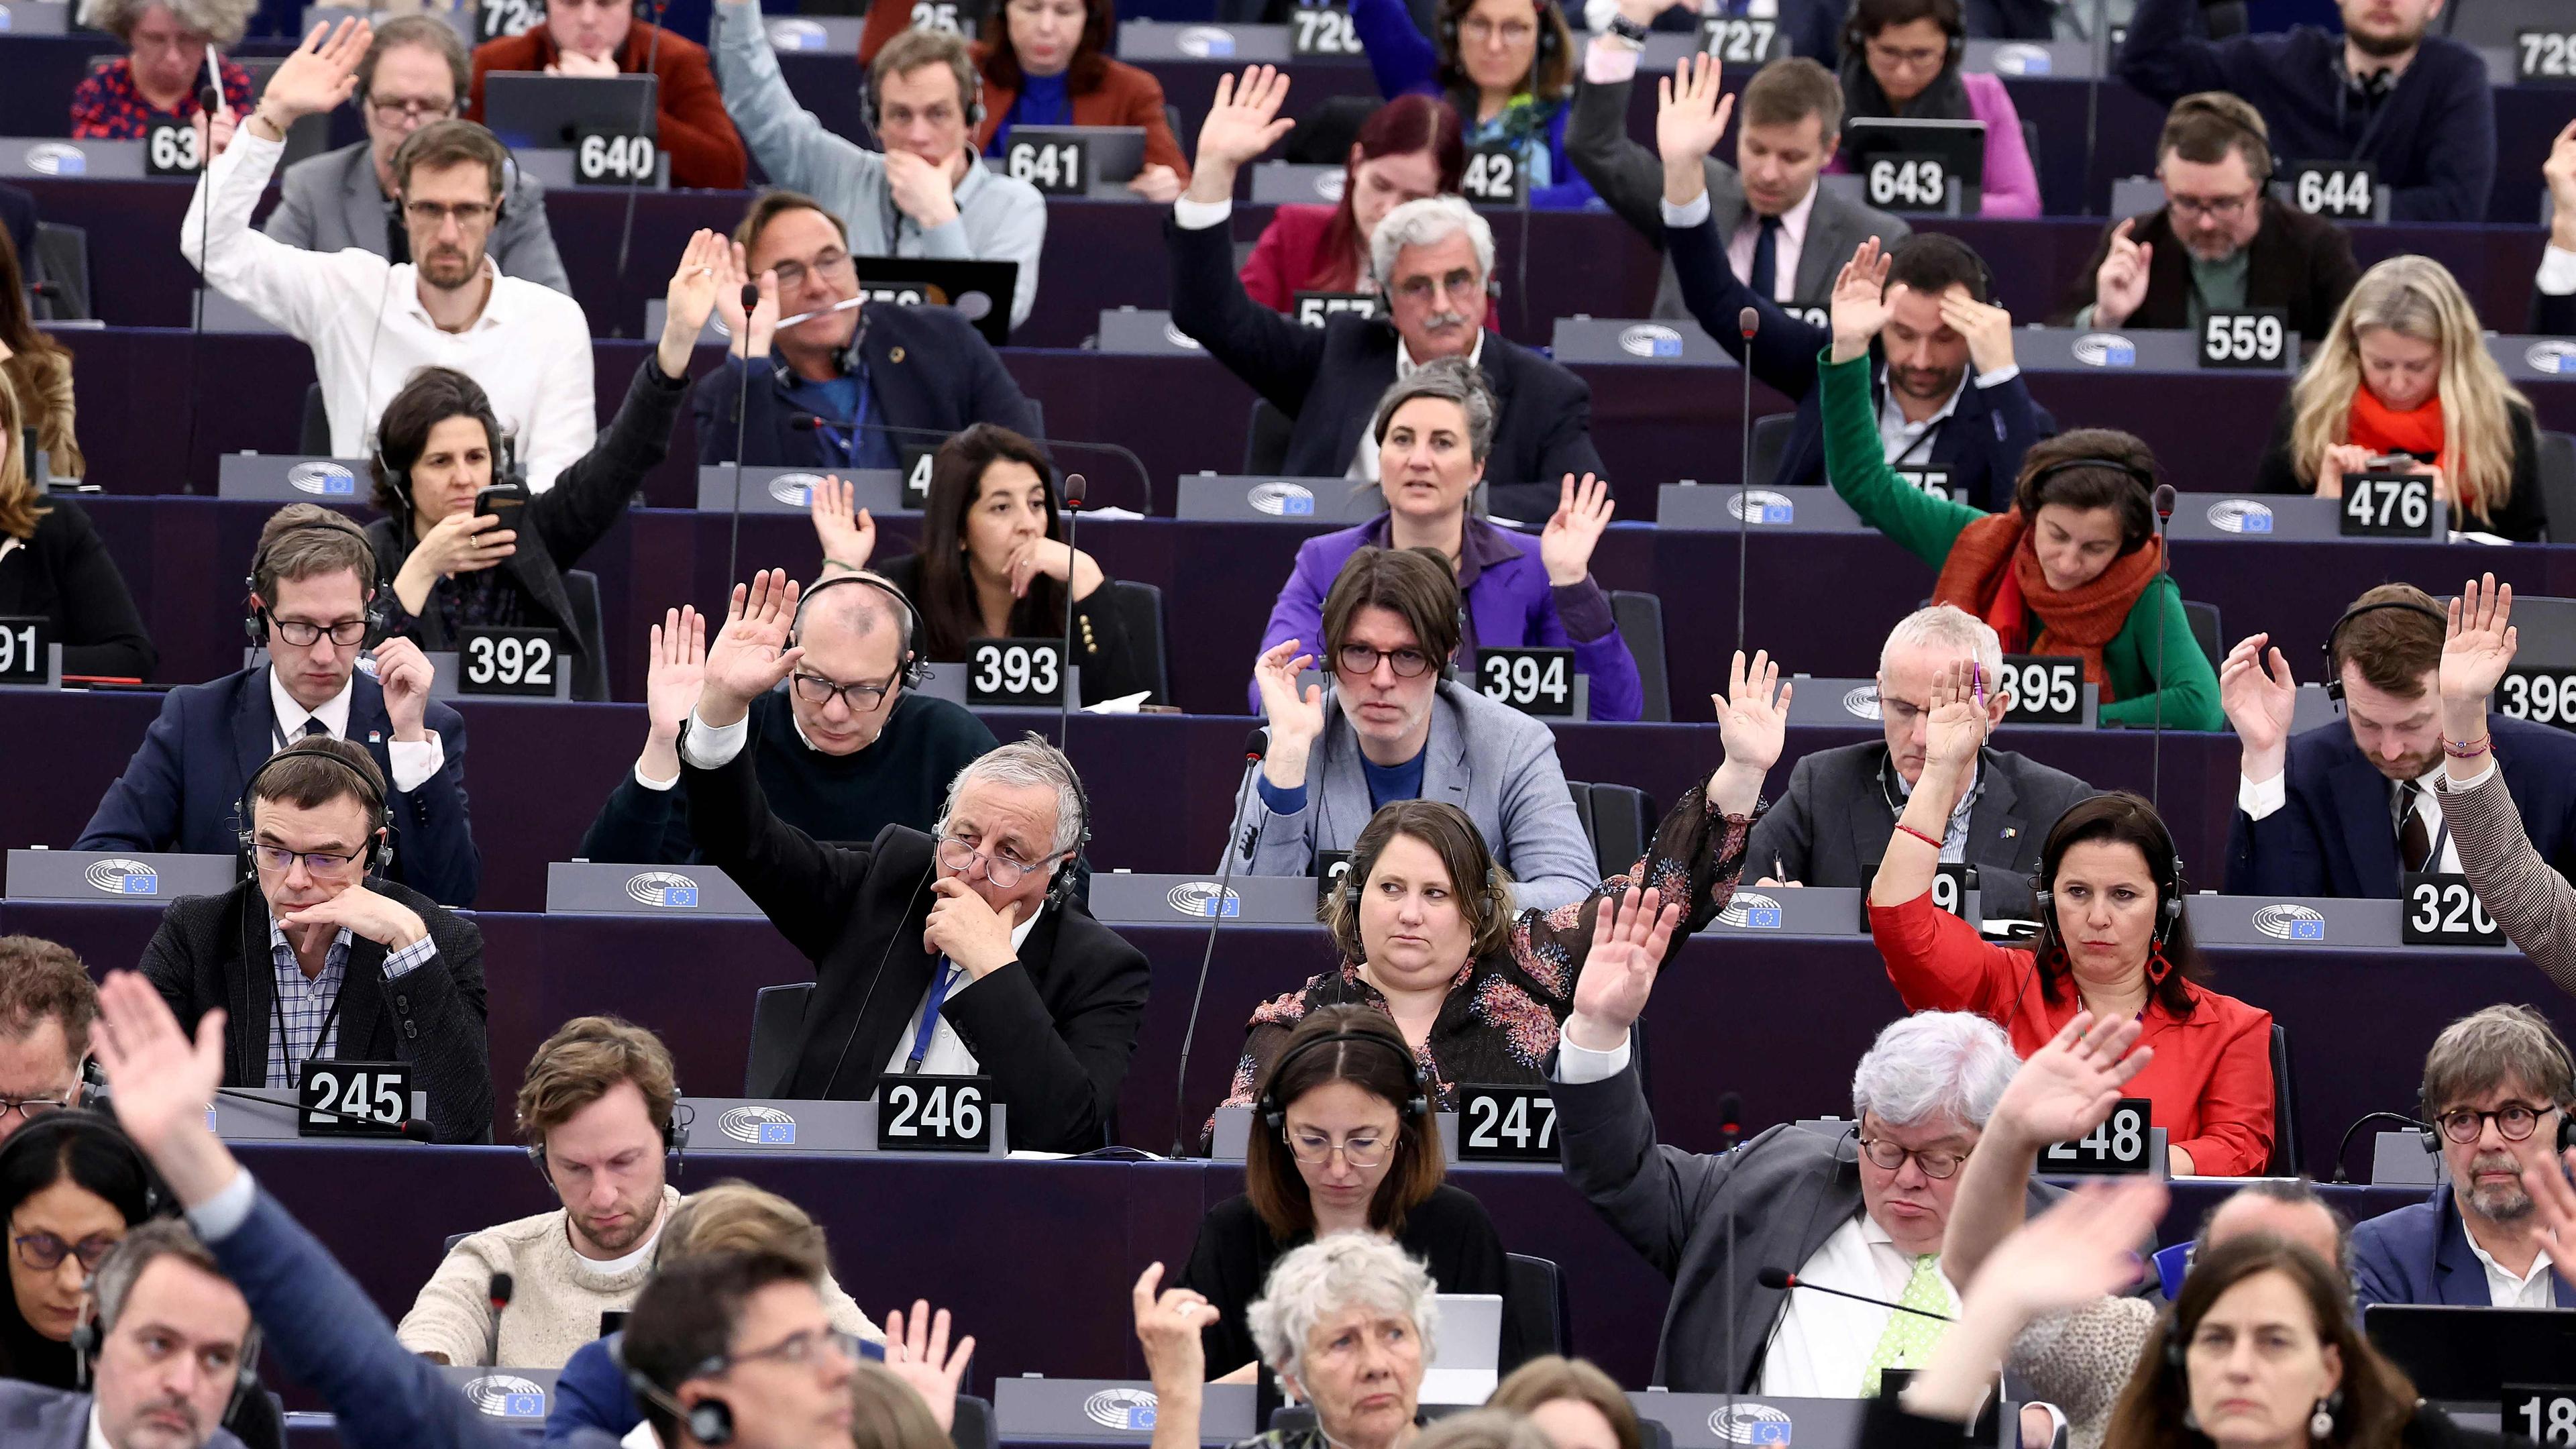 Les élus du Parlement européen en train de voter en séance plénière, ce 23 avril.